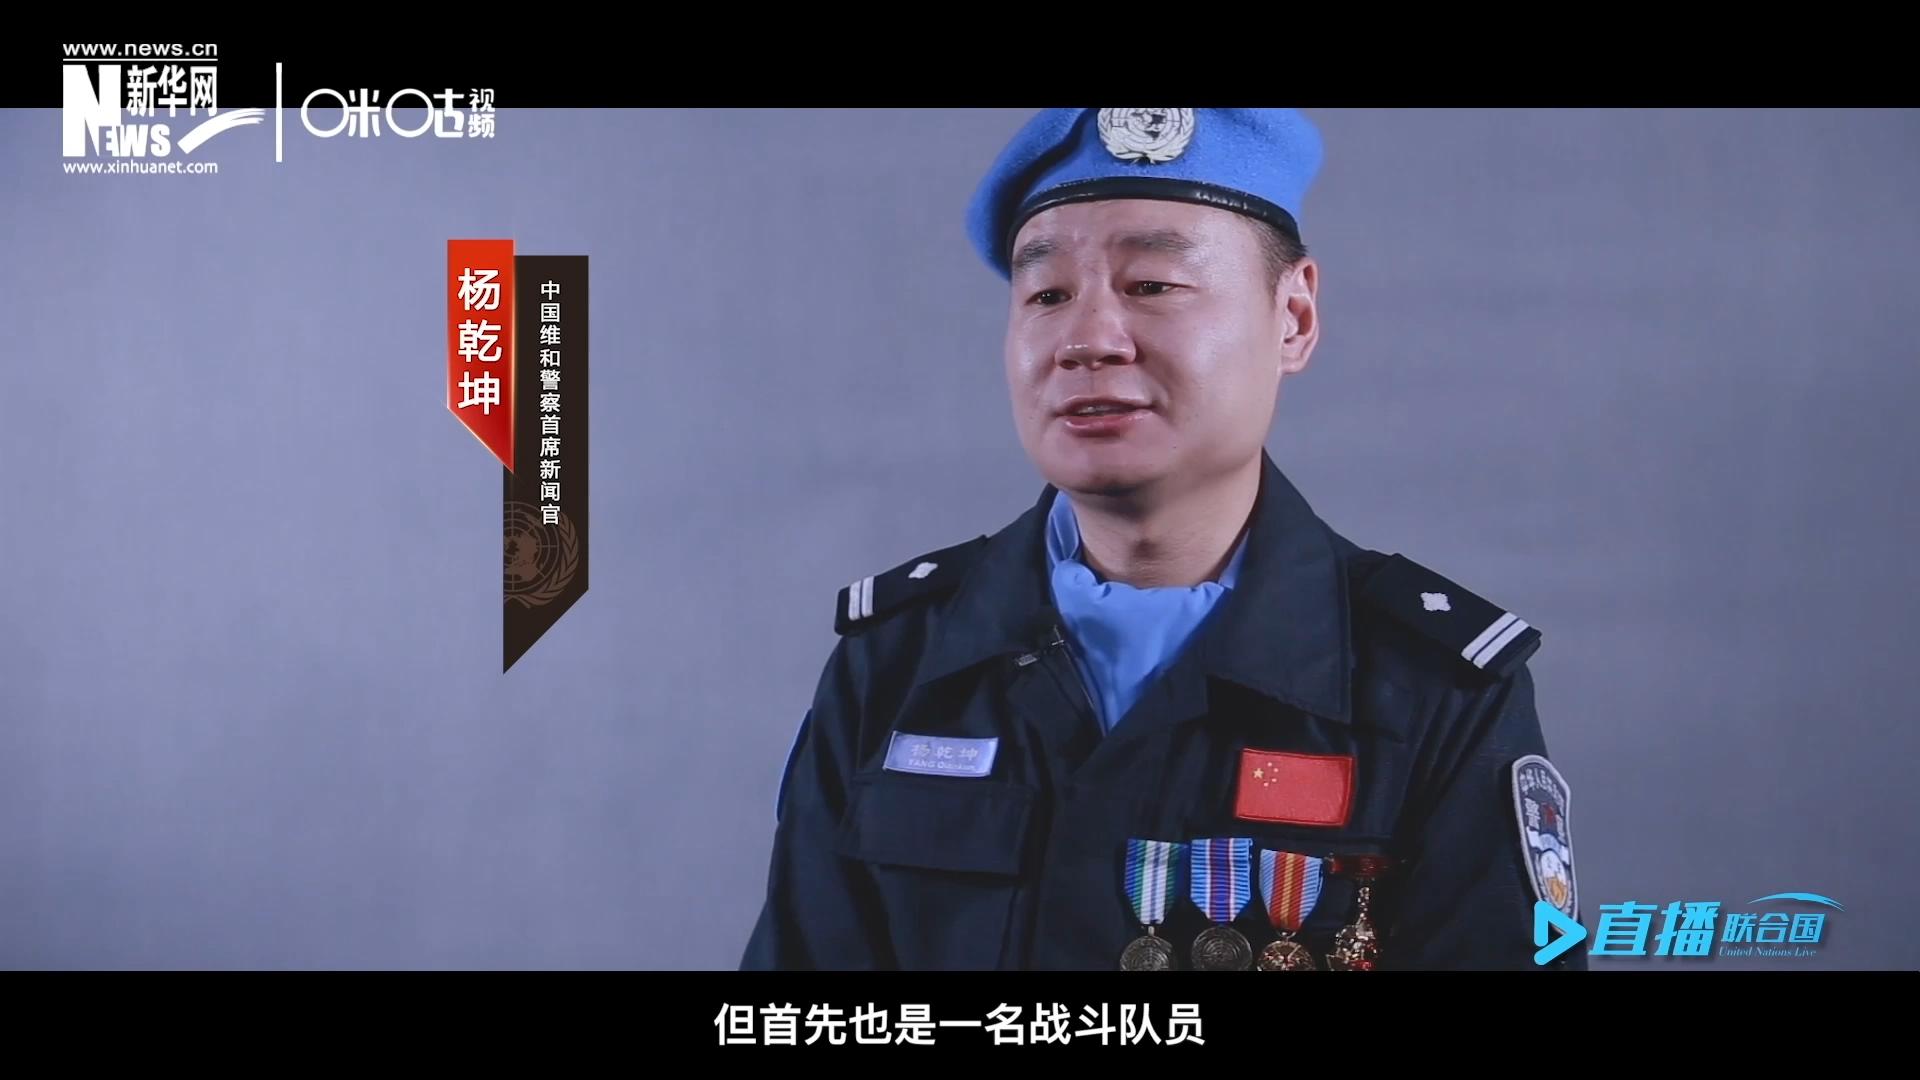 我是杨乾坤，负责中国维和警察的对外宣传工作，但首先我也是一名战斗队员。